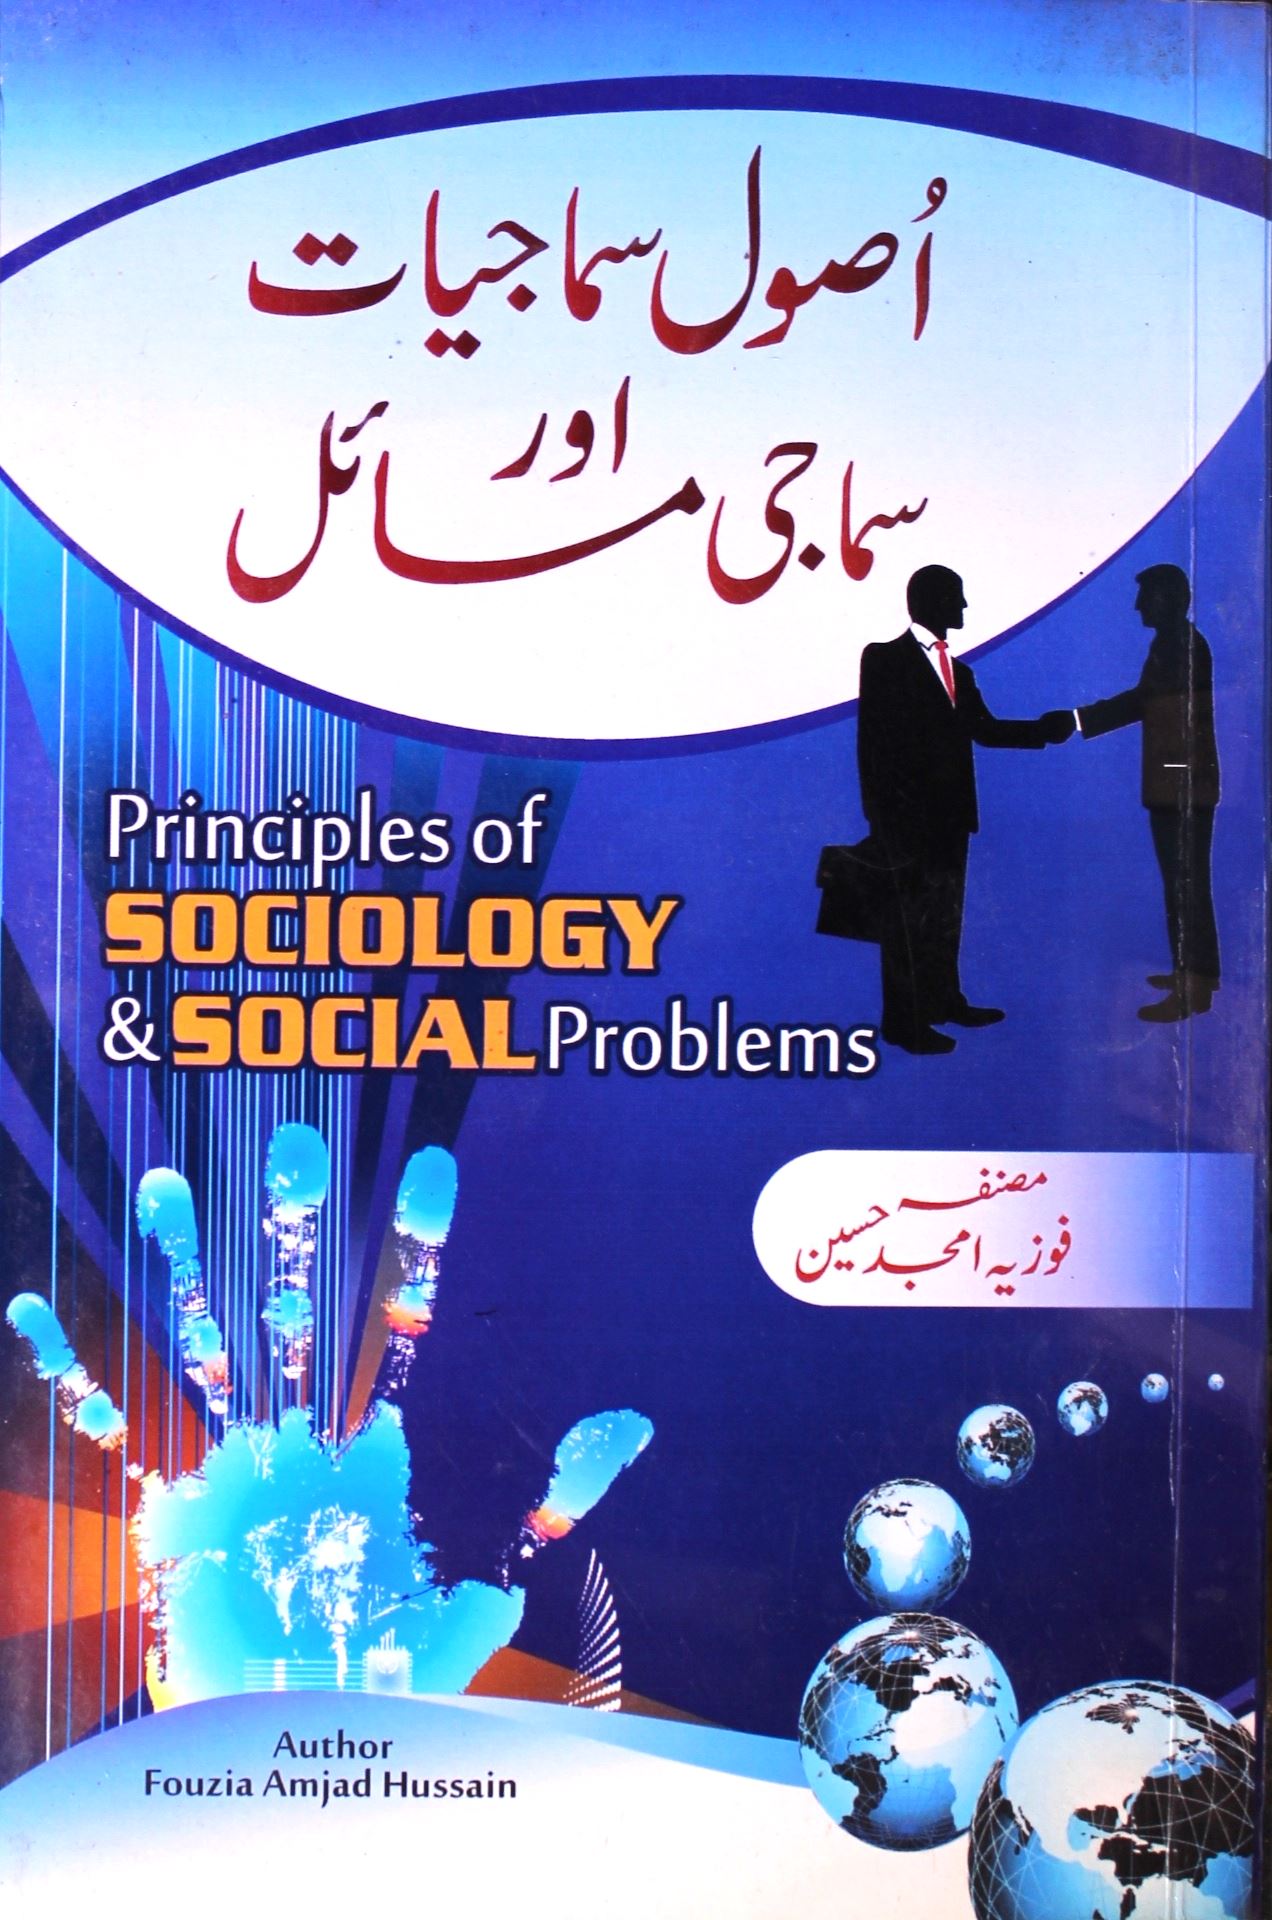 اصول سماجیات اور سماجی مسائل